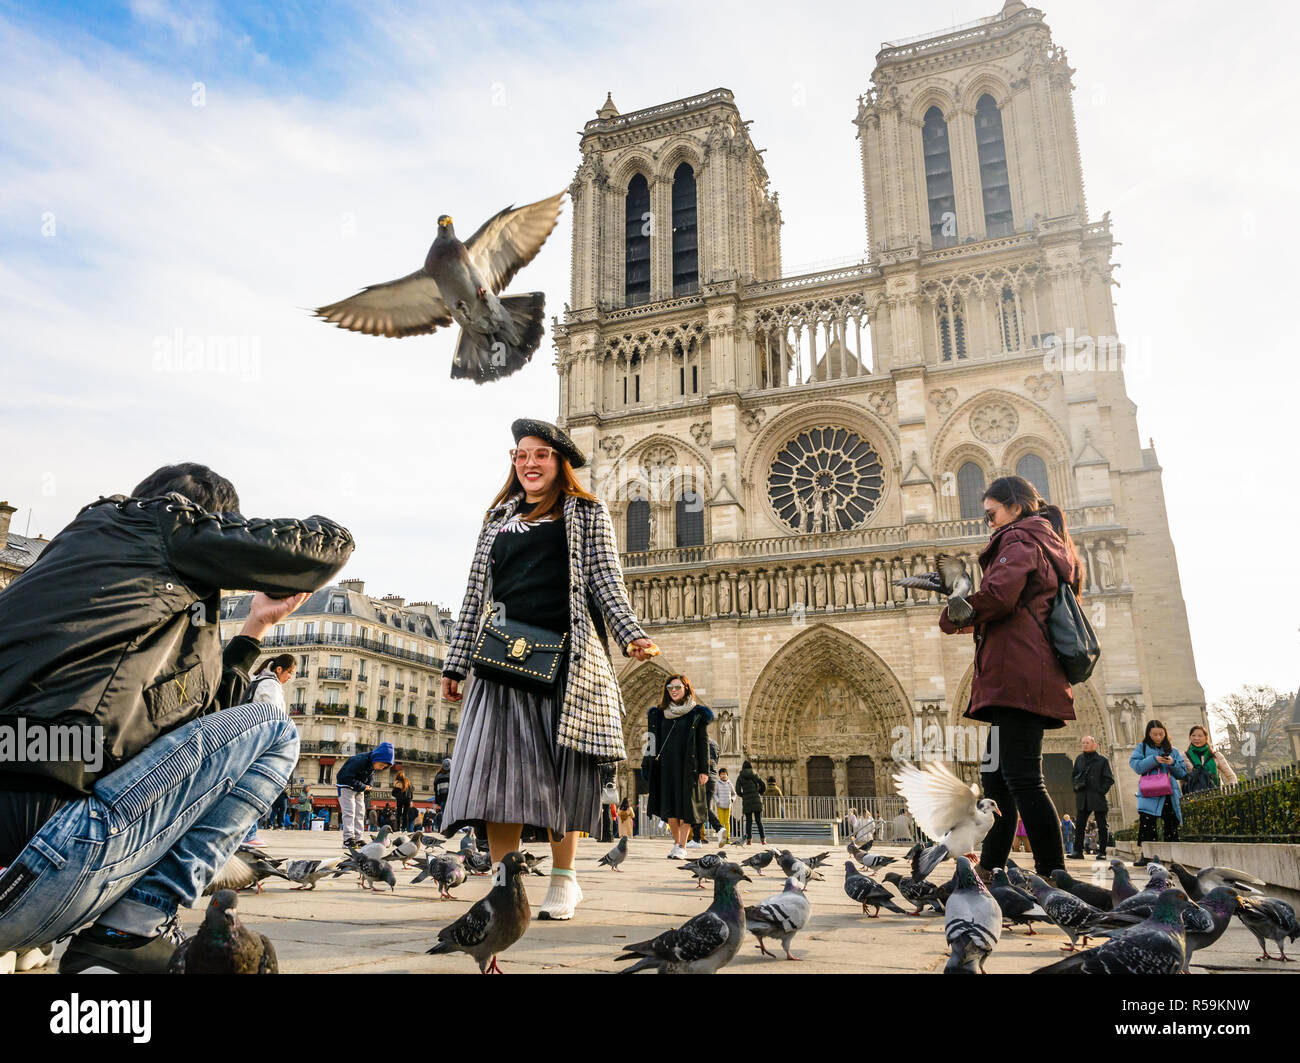 Un touriste asiatique prend des photos de sa petite amie au milieu de la marche s'envoler les pigeons en face de la cathédrale Notre-Dame de Paris par un beau matin d'automne. Banque D'Images